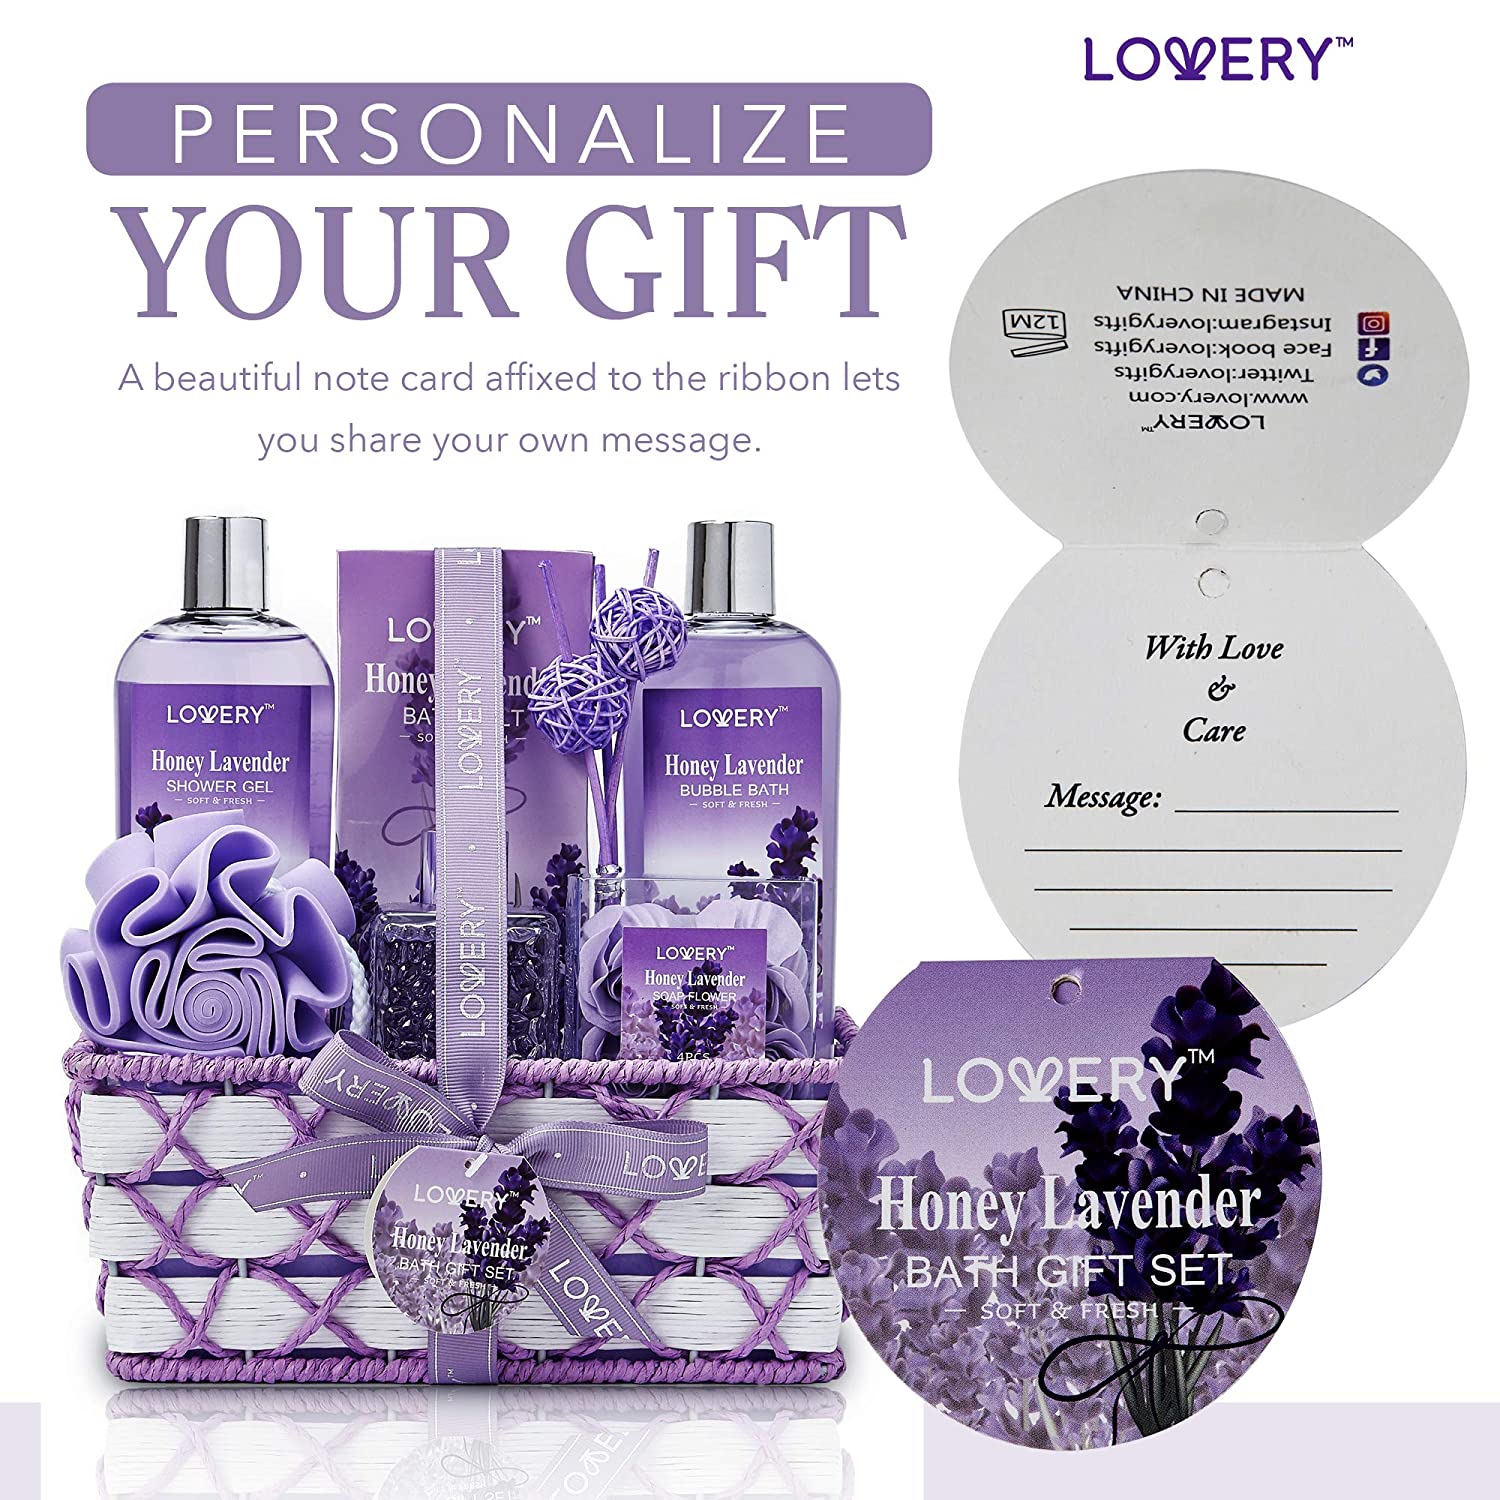 Her Eau de Parfum Gift Set - BURBERRY | Sephora